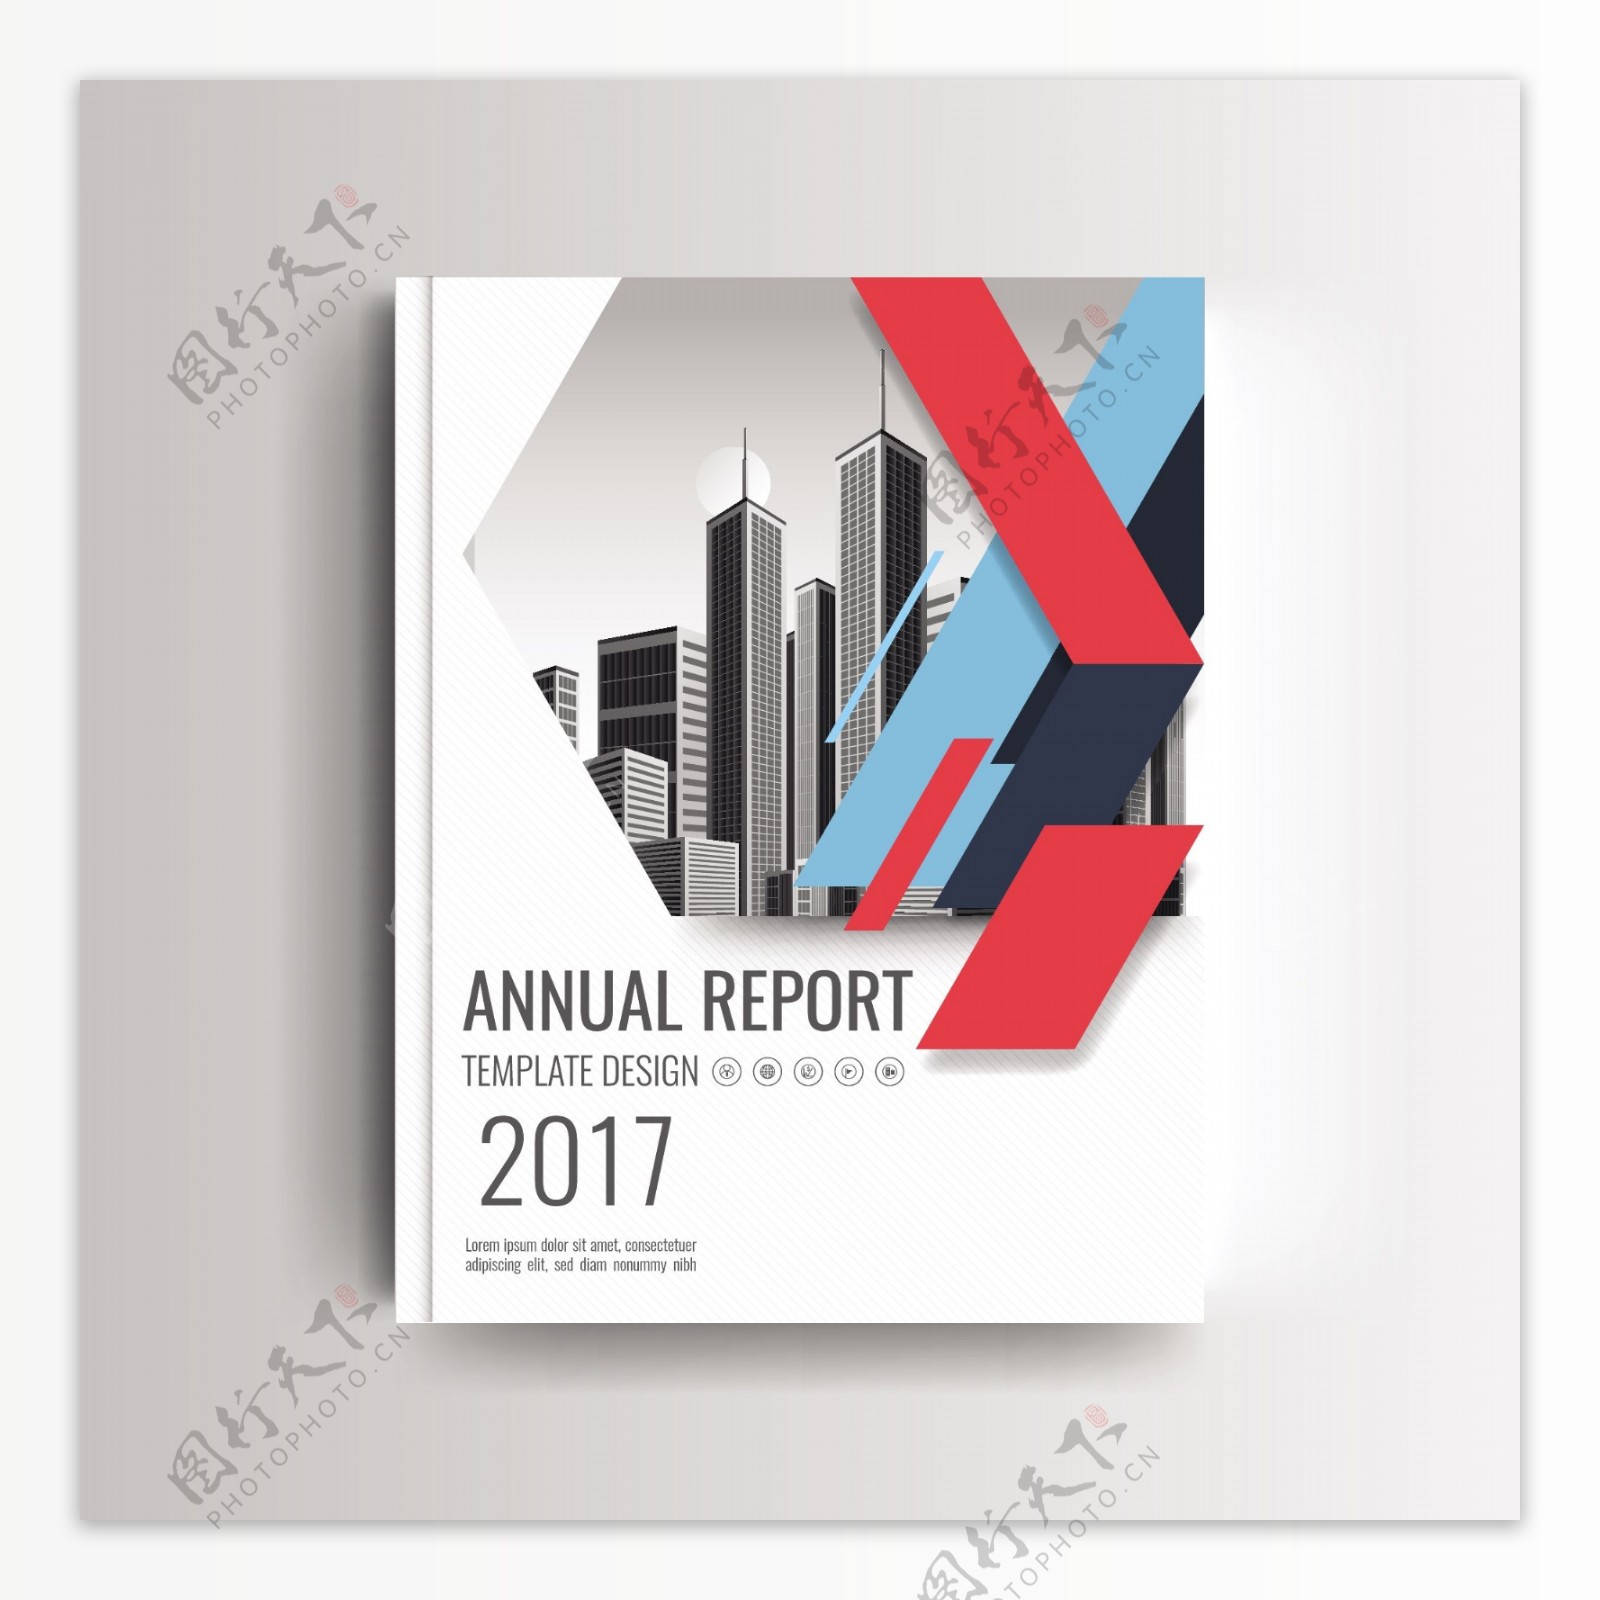 现代年度报告封面蓝色和红色几何口音模板